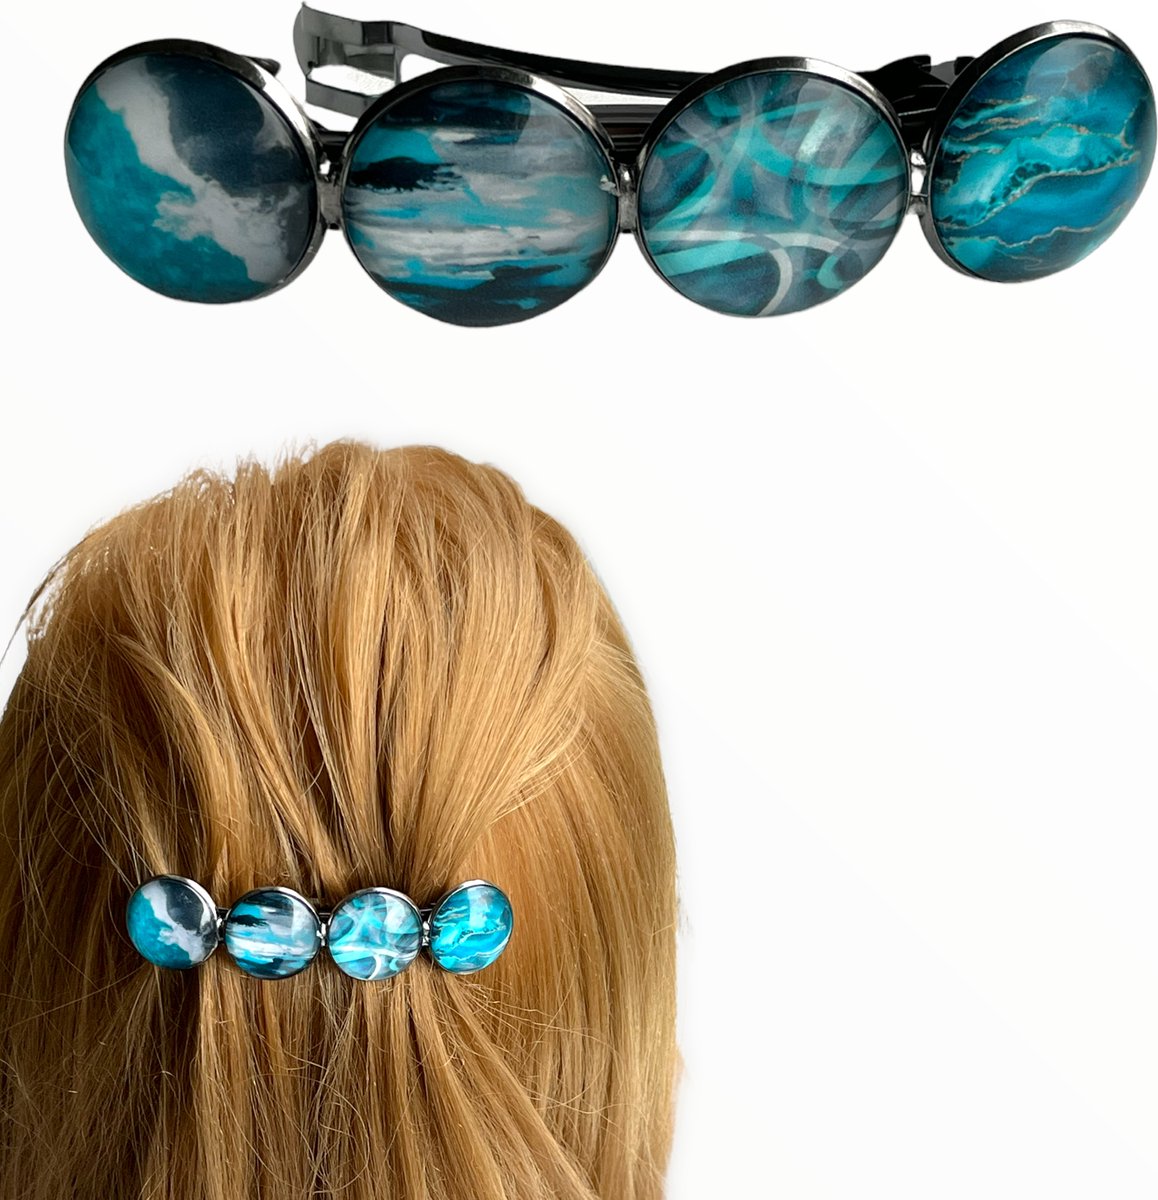 Hairpin-Haarspeld-Haaraccessoire-Hairclip-Cabochon-grijs-groen-blauw-wit-Haarklem-Haarmode